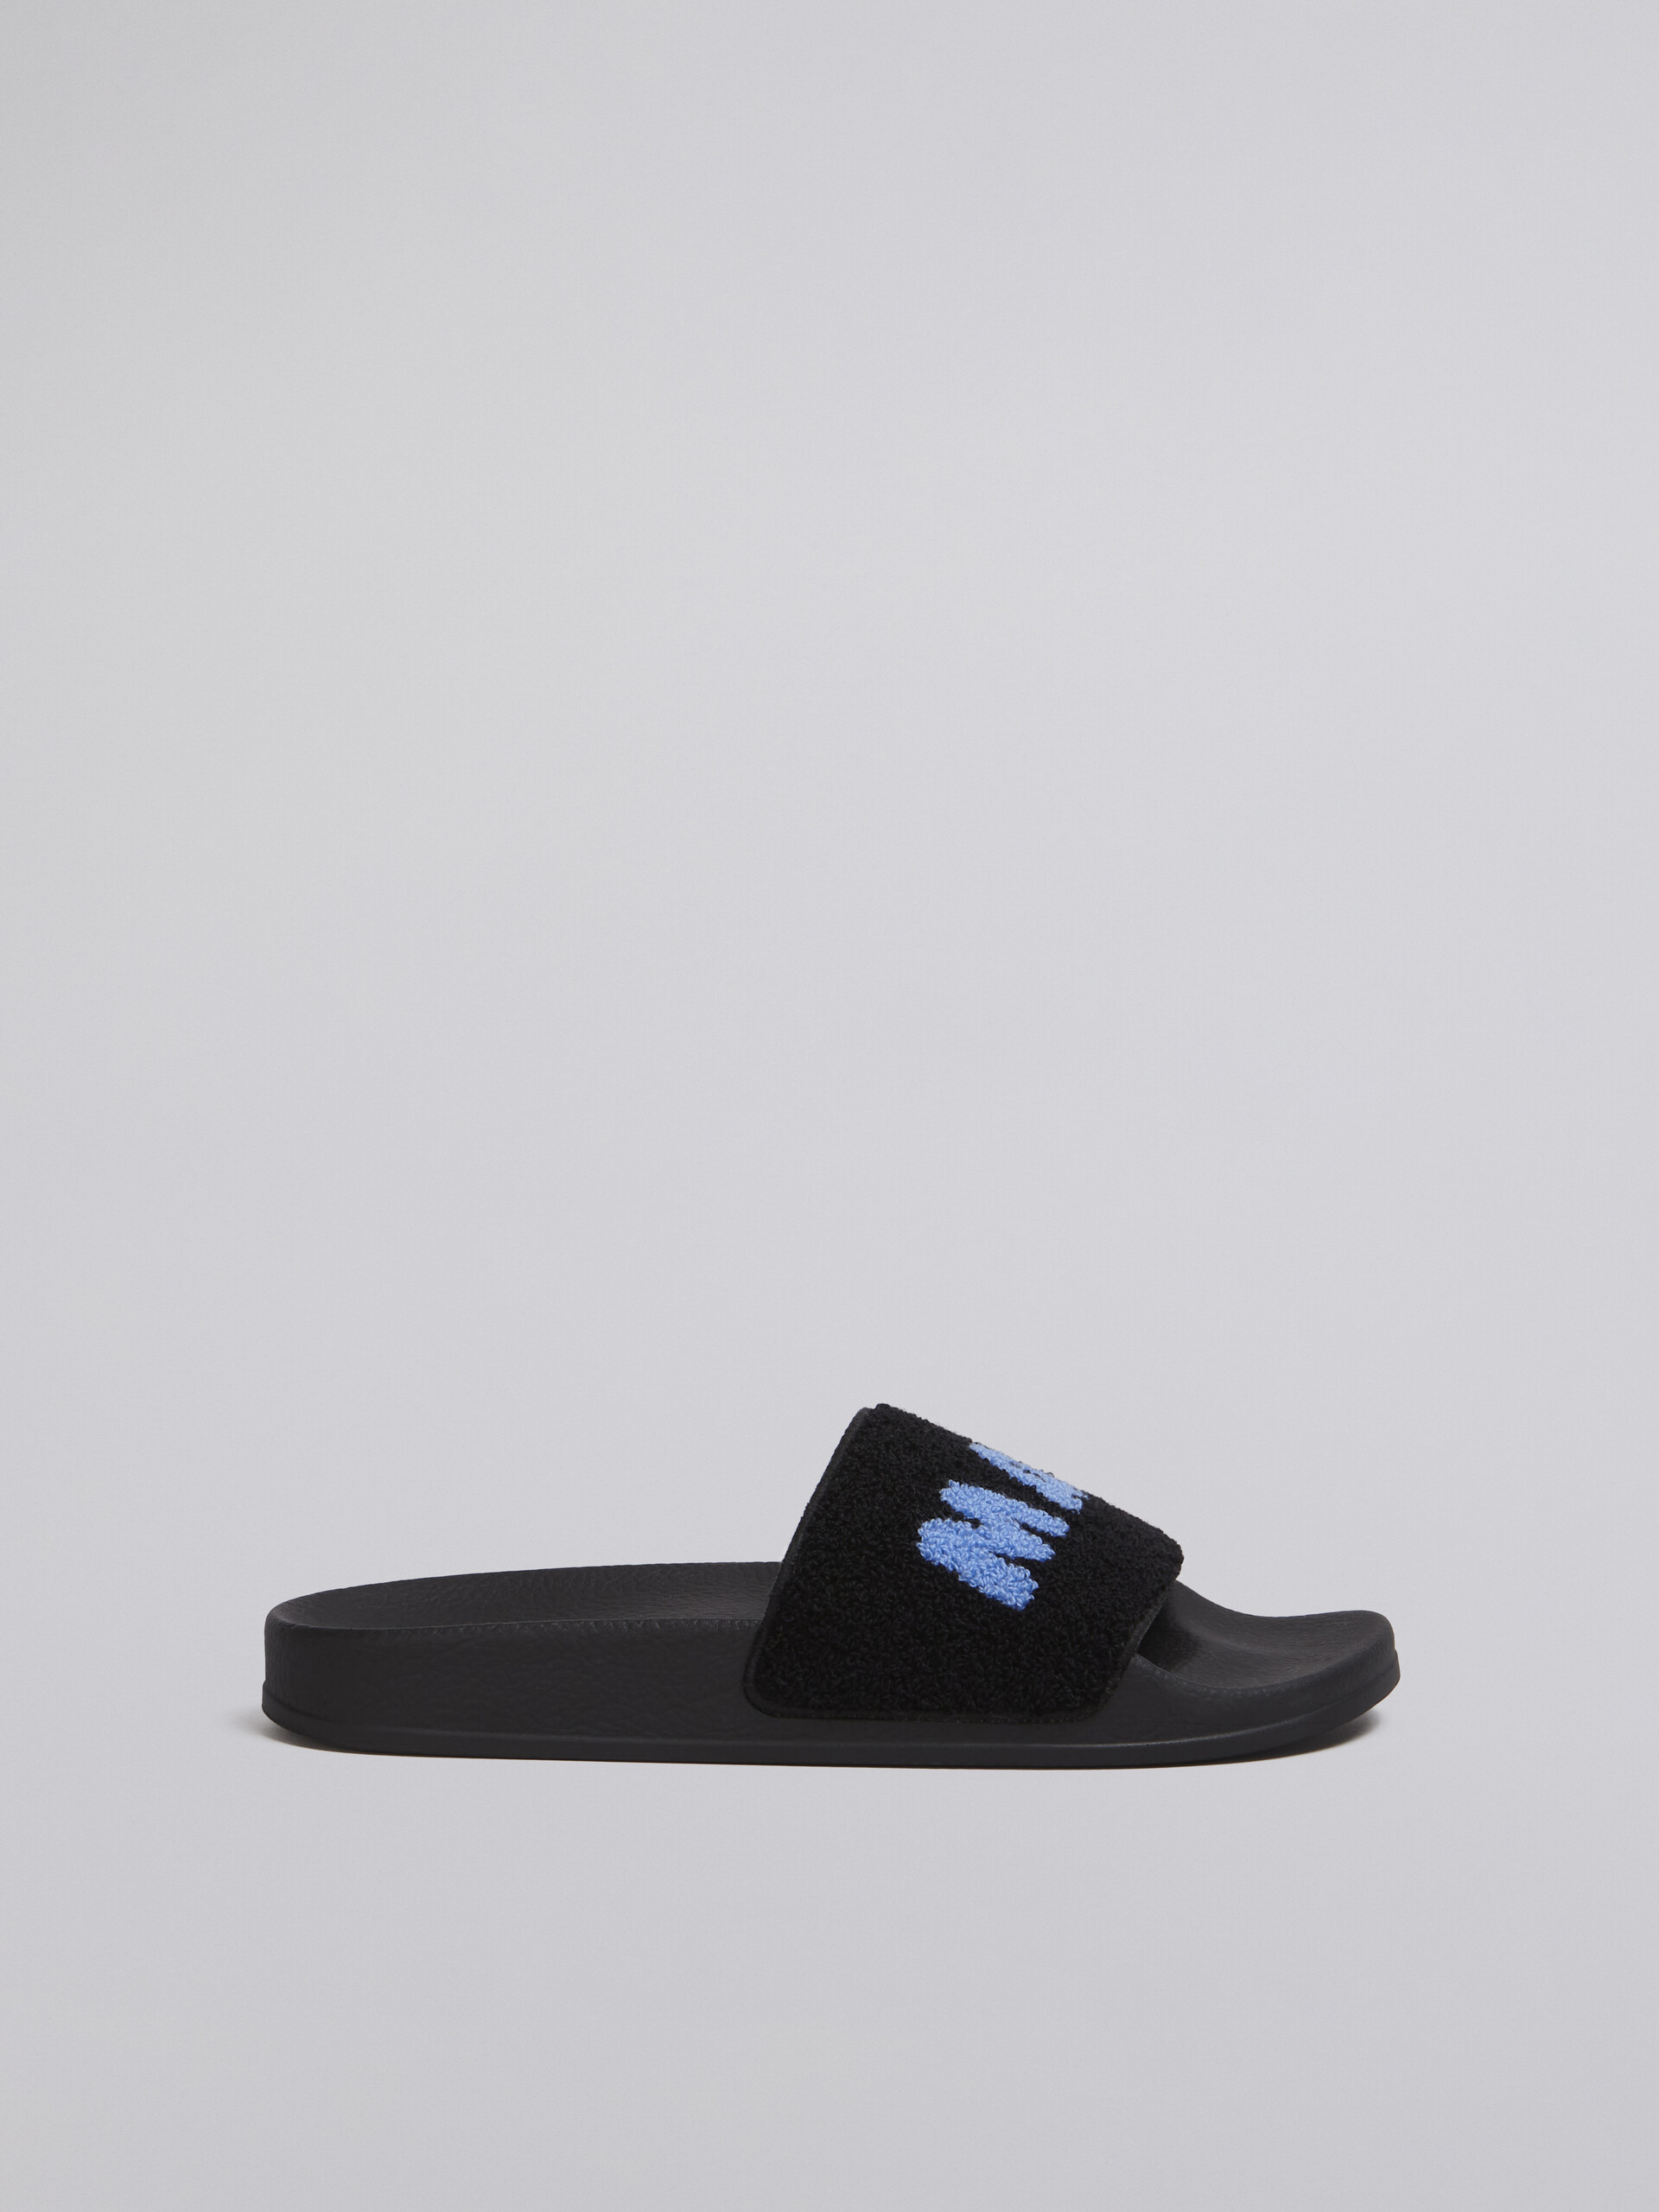 Sandalo in gomma con fascia in spugna nero e blu - Sandali - Image 1